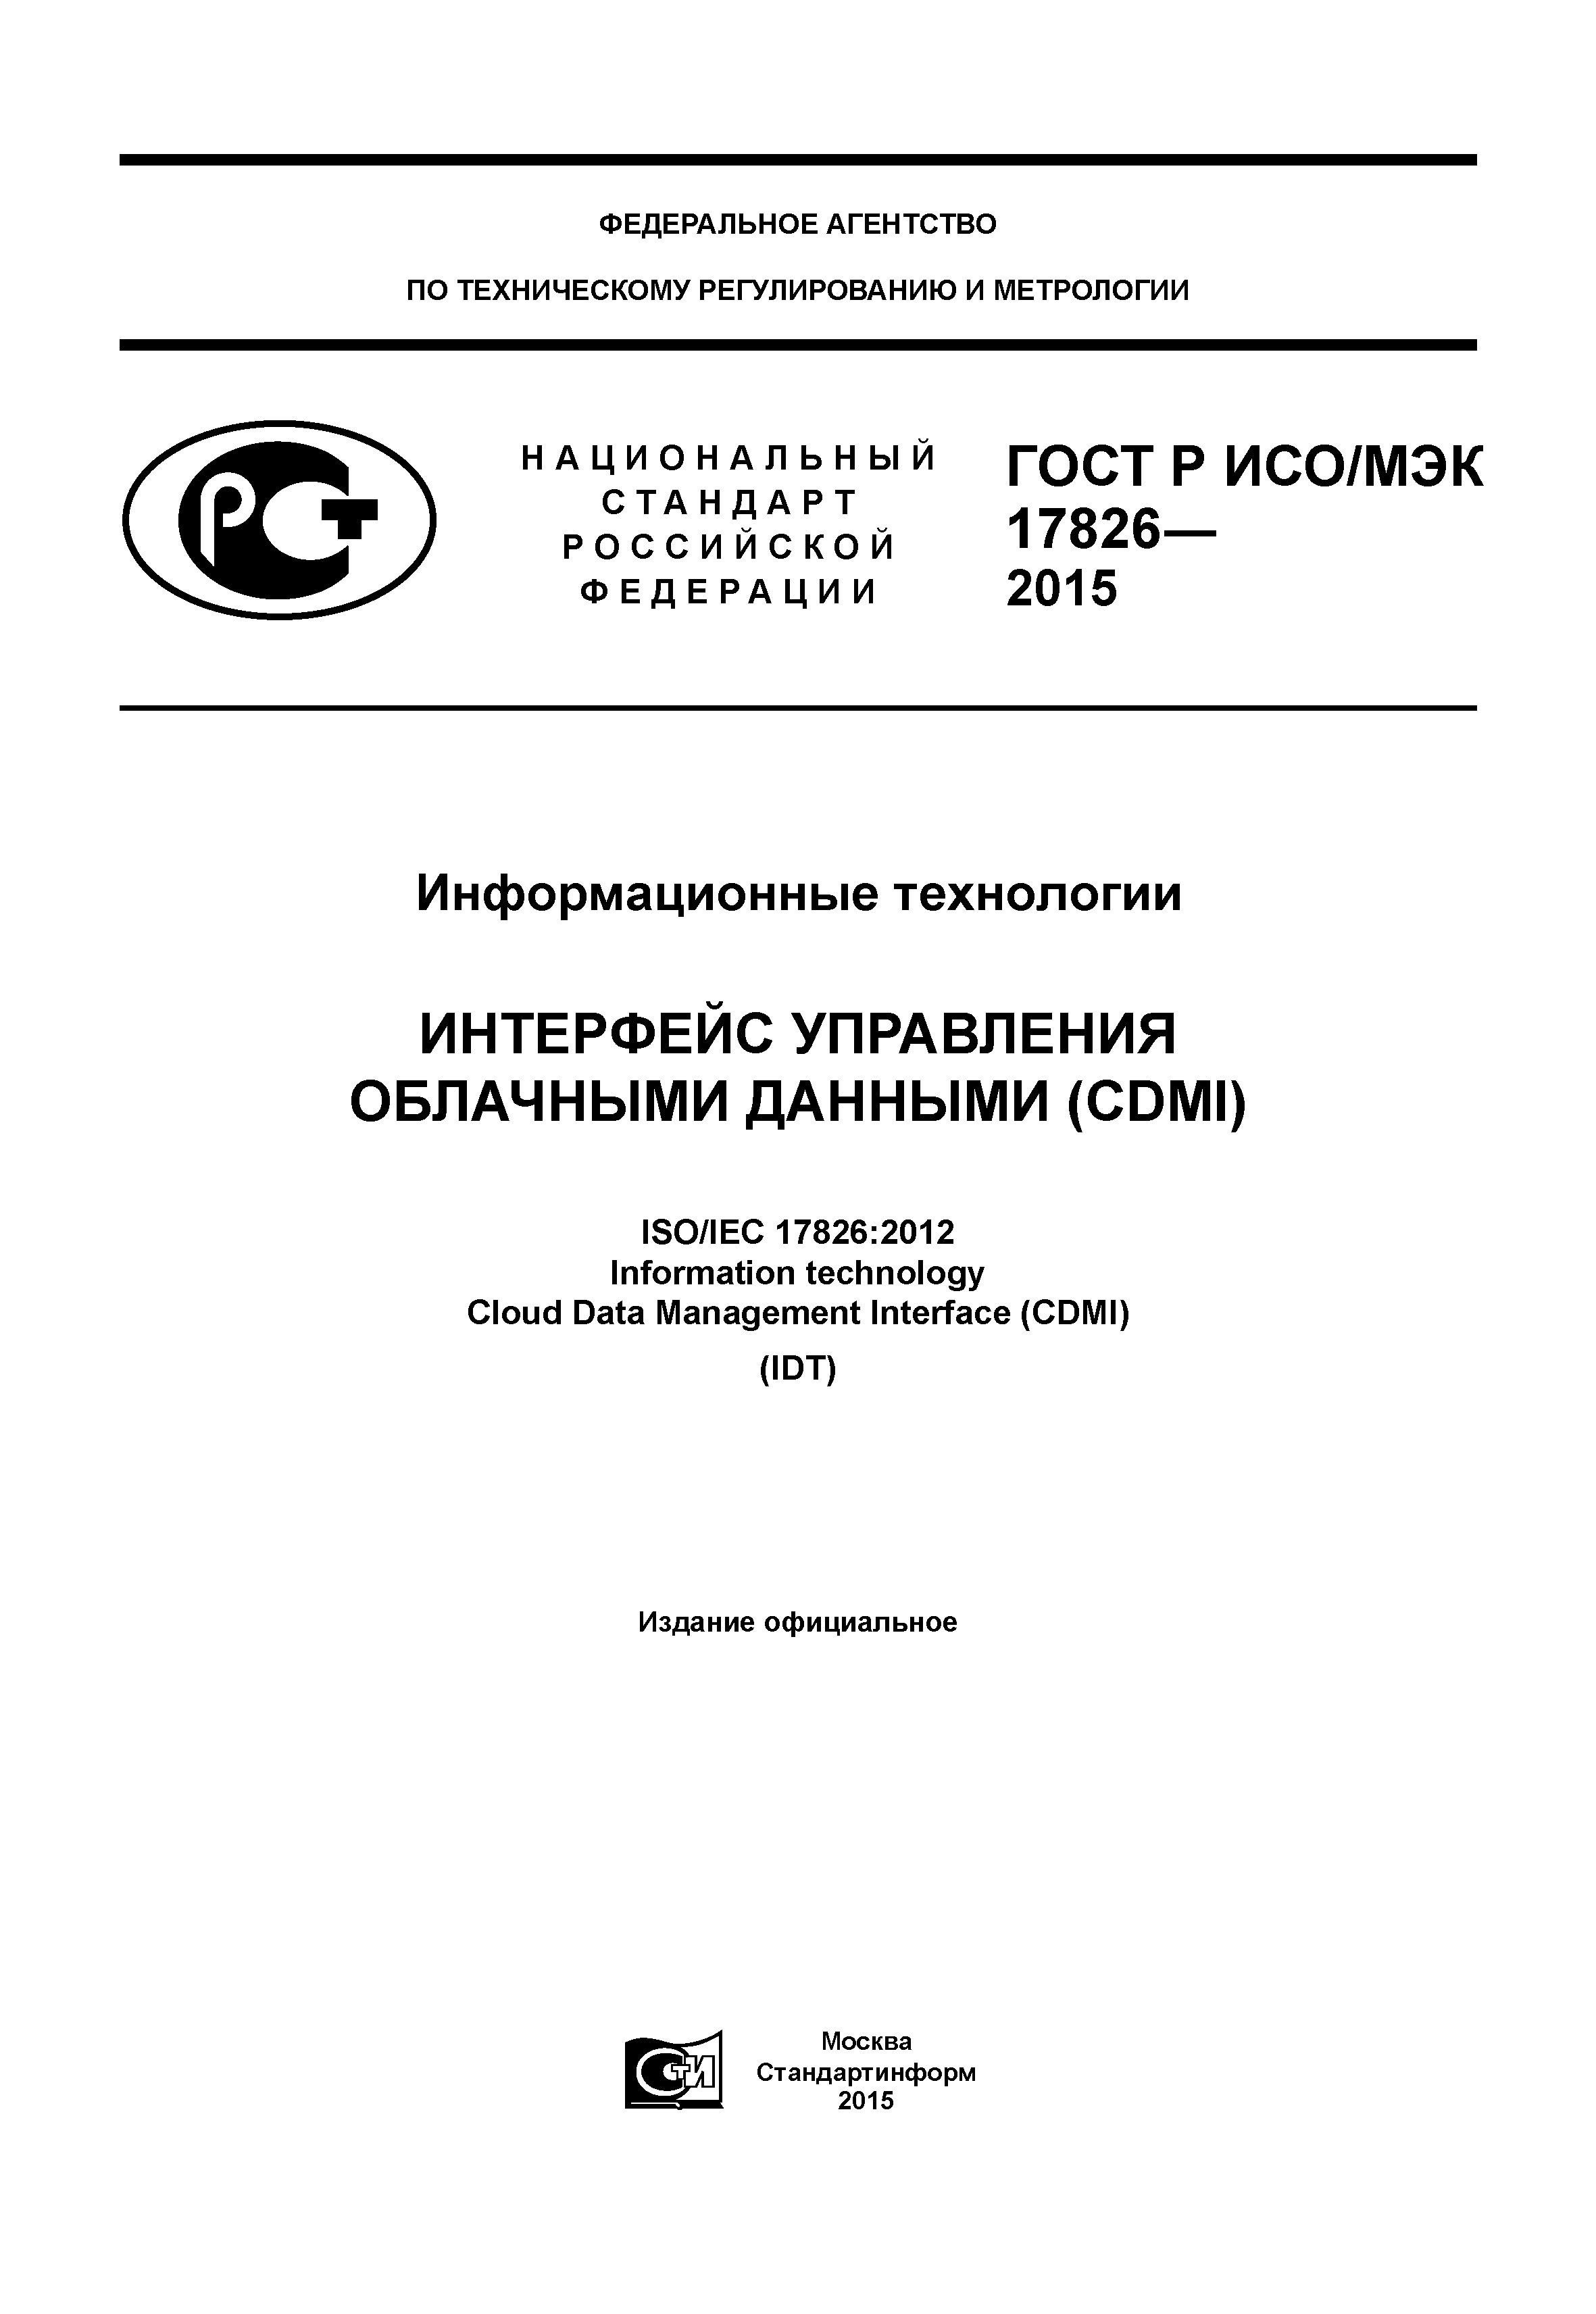 ГОСТ Р ИСО/МЭК 17826-2015